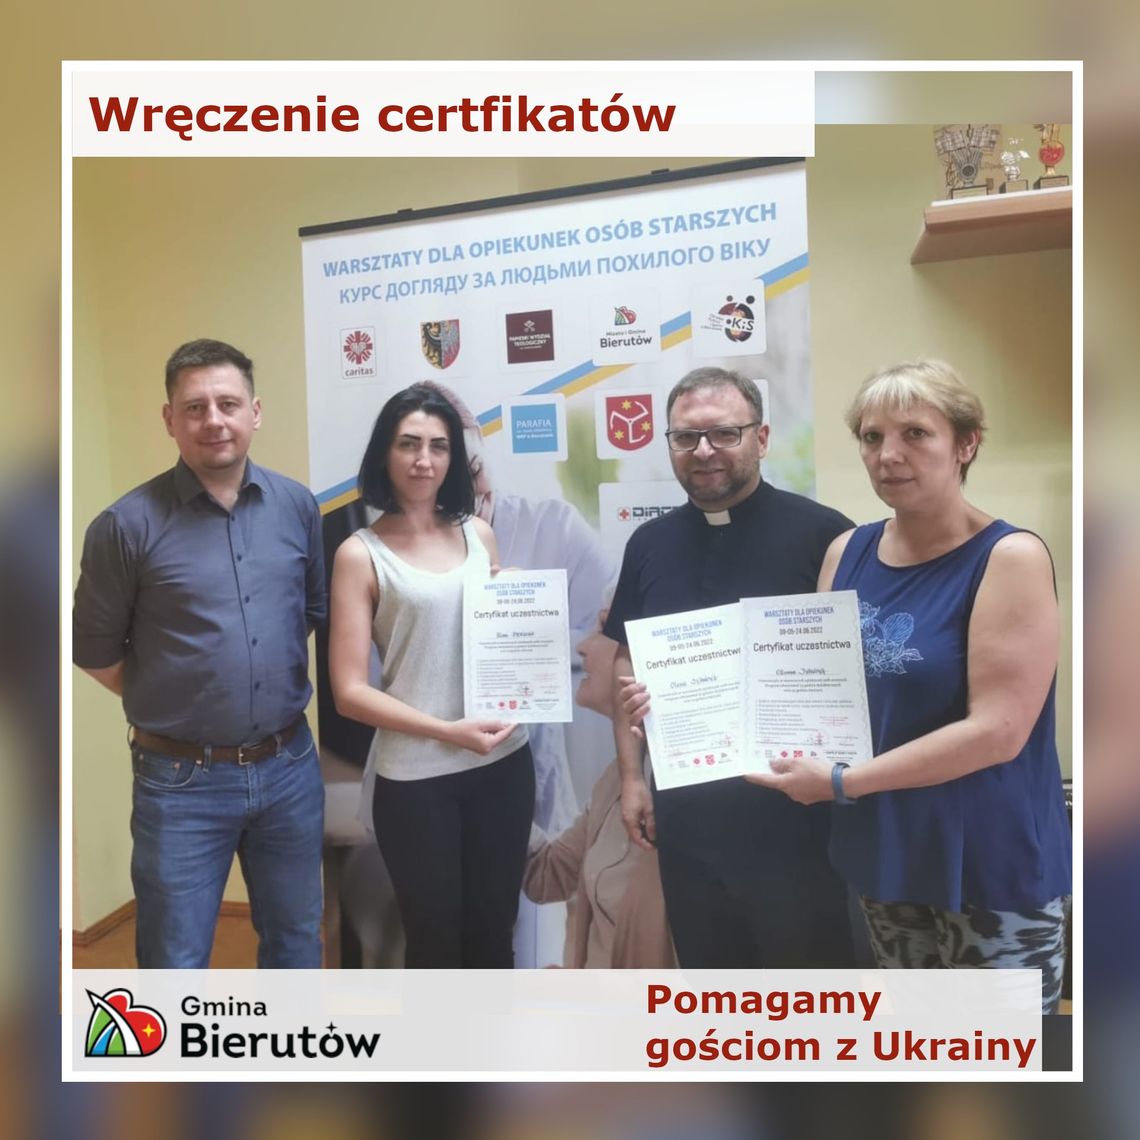 Certyfikaty dla Ukrainek w Bierutowie